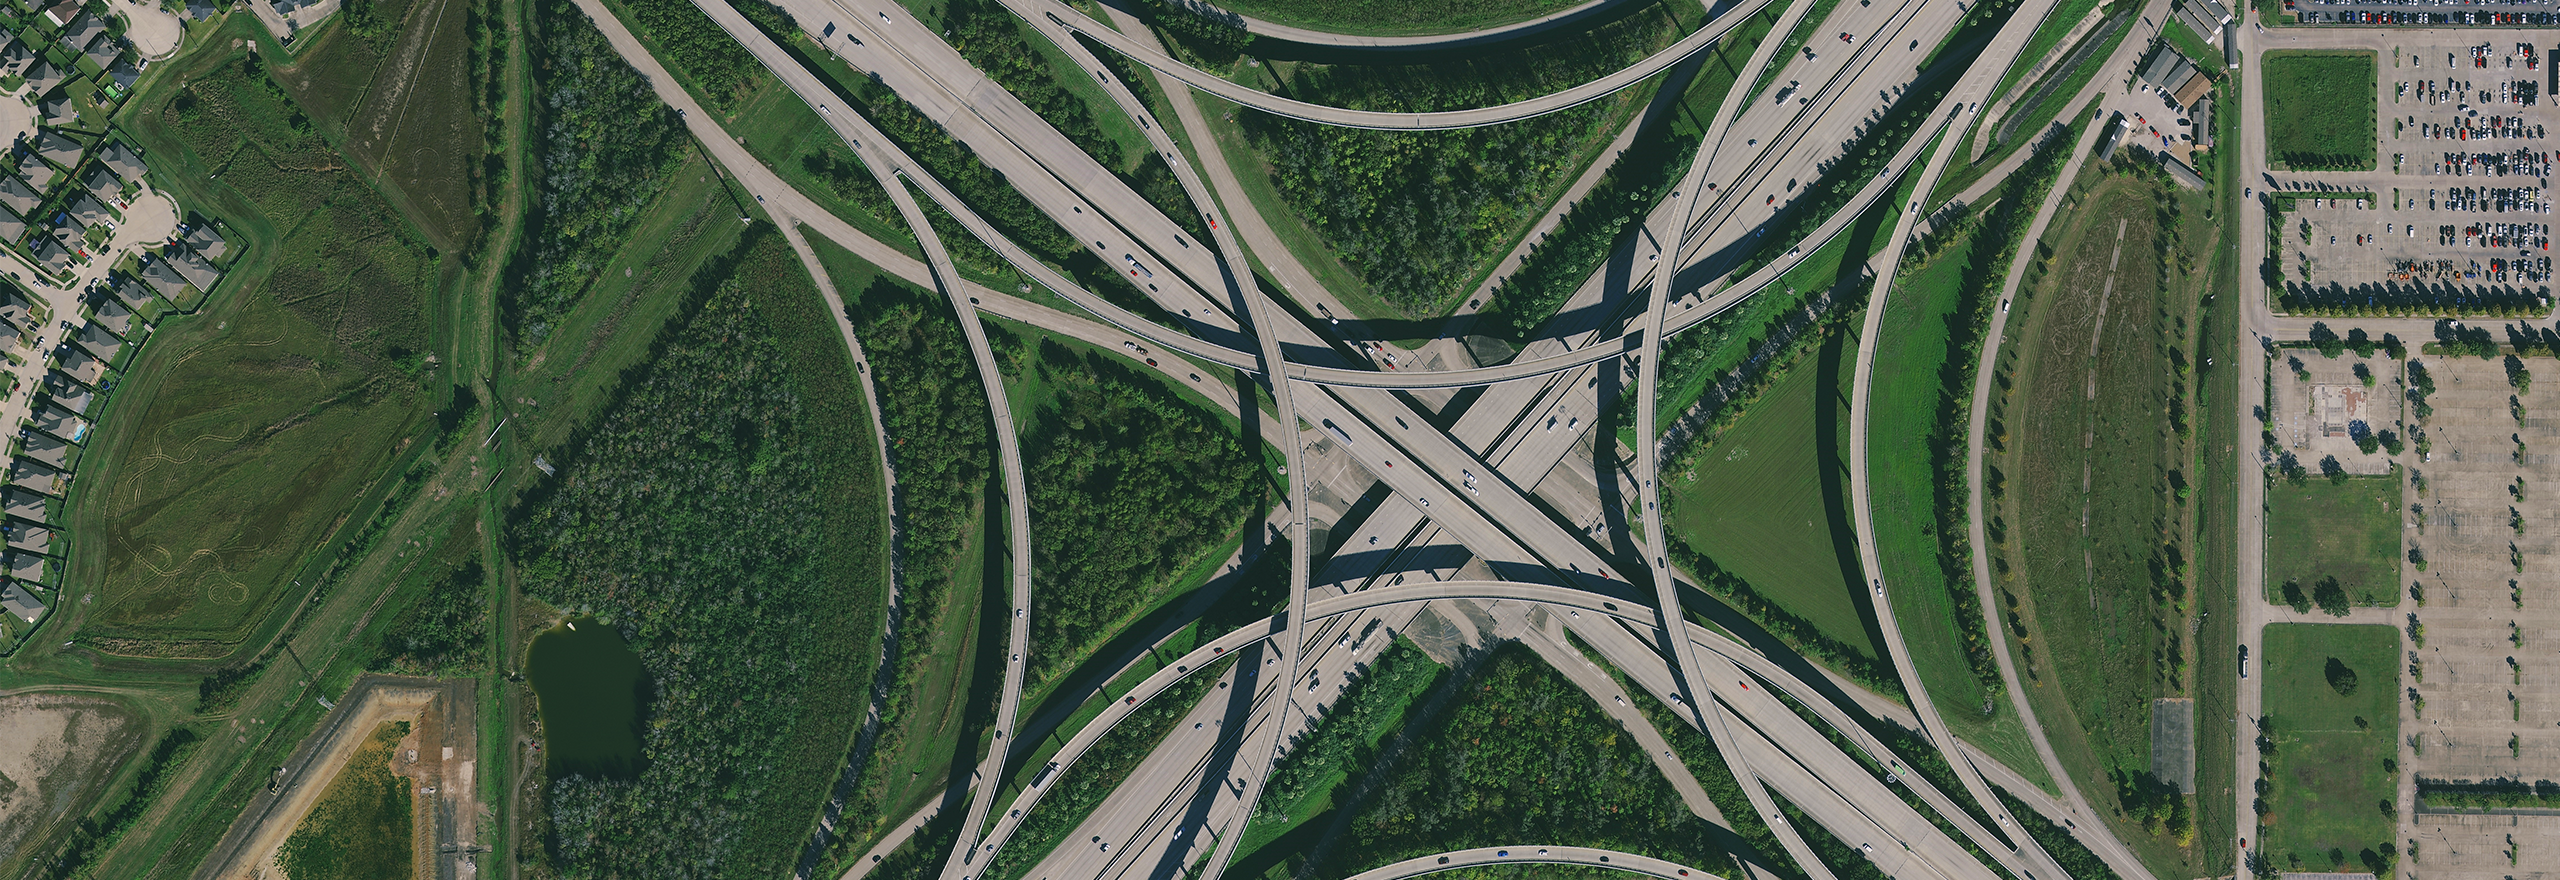 Imagens aéreas de um cruzamento de rodovias em Houston